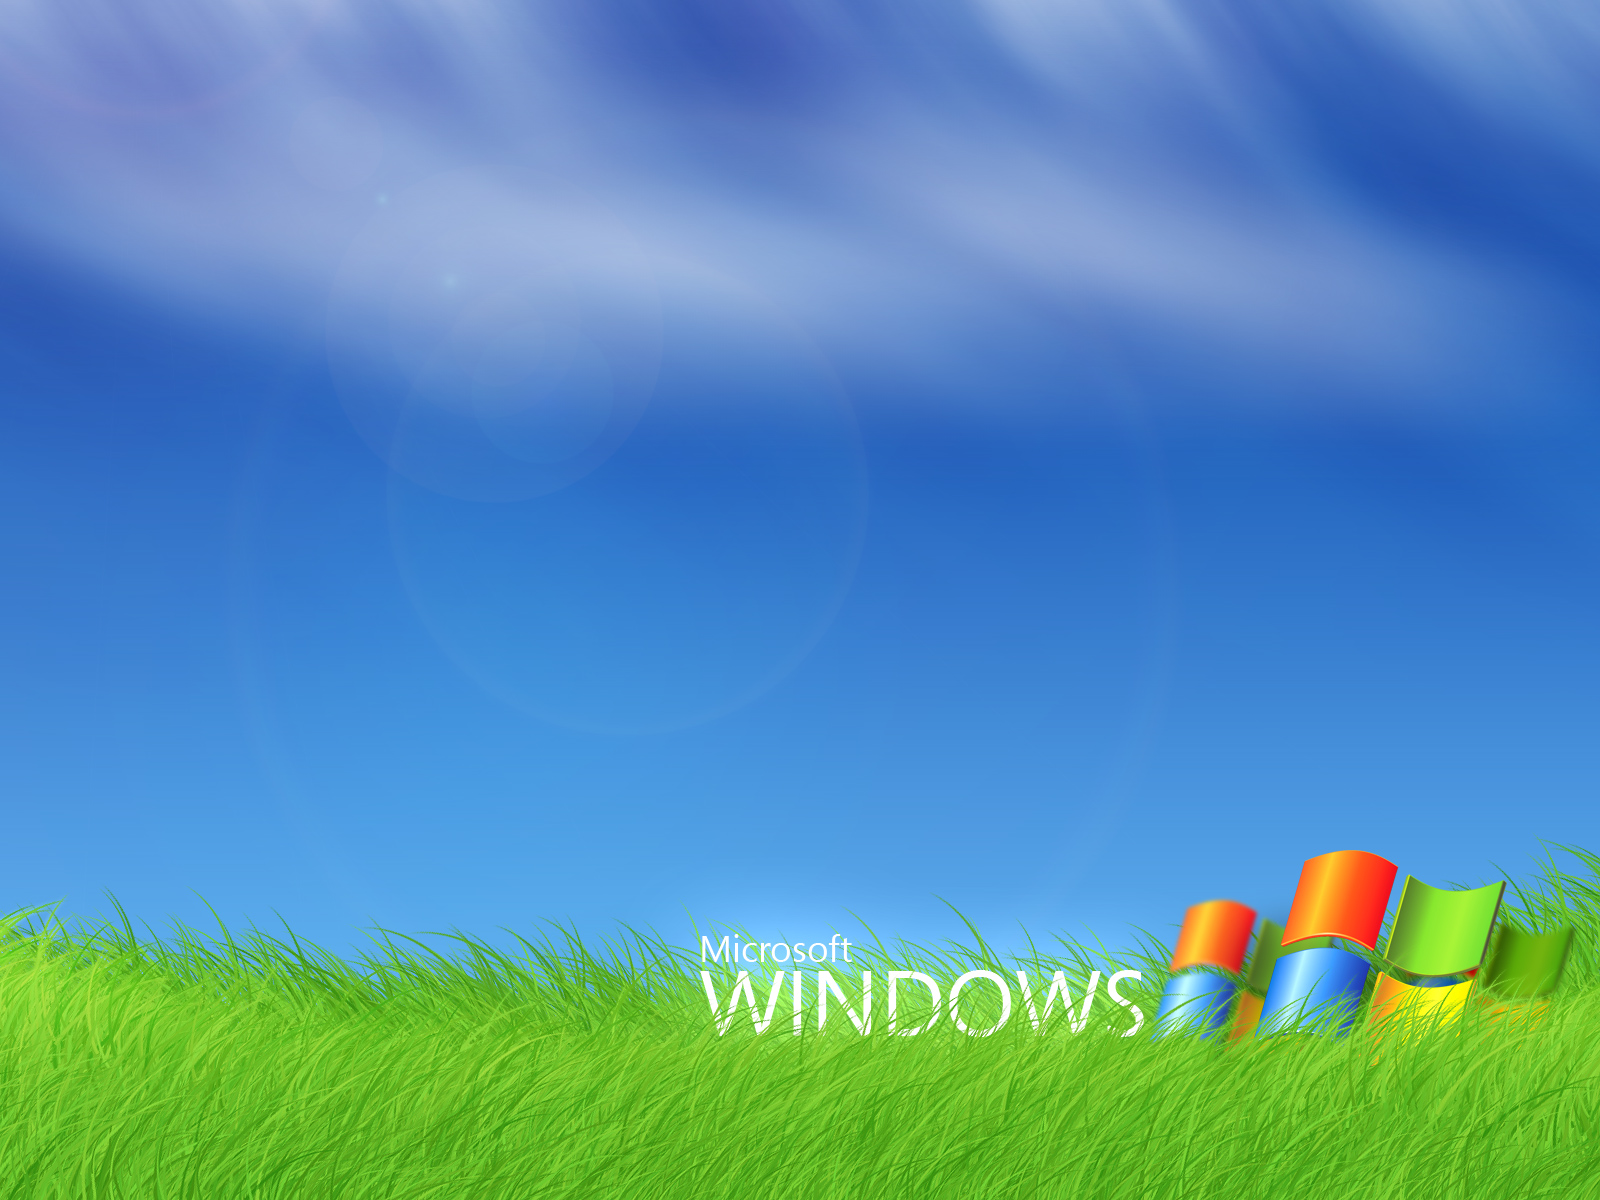 Microsoft Windows Xp Wallpaper Desktop